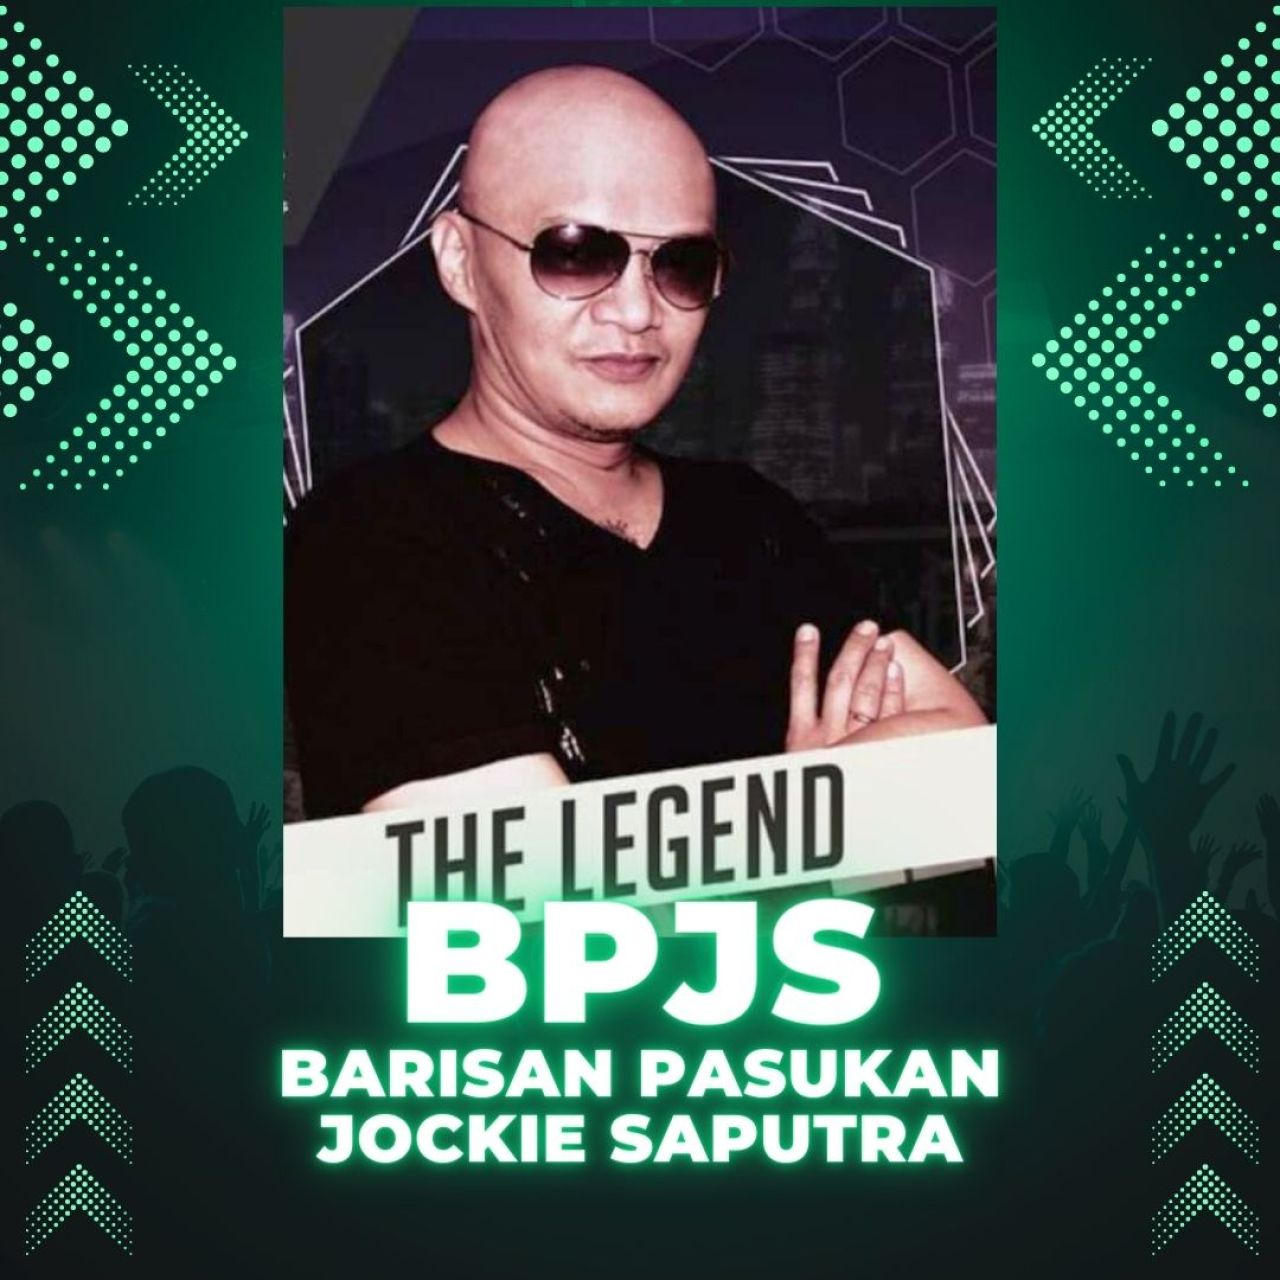 Respon Sang DJ Legendaris Indonesia Atas Hadirnya Komunitas BPJS. Begini...